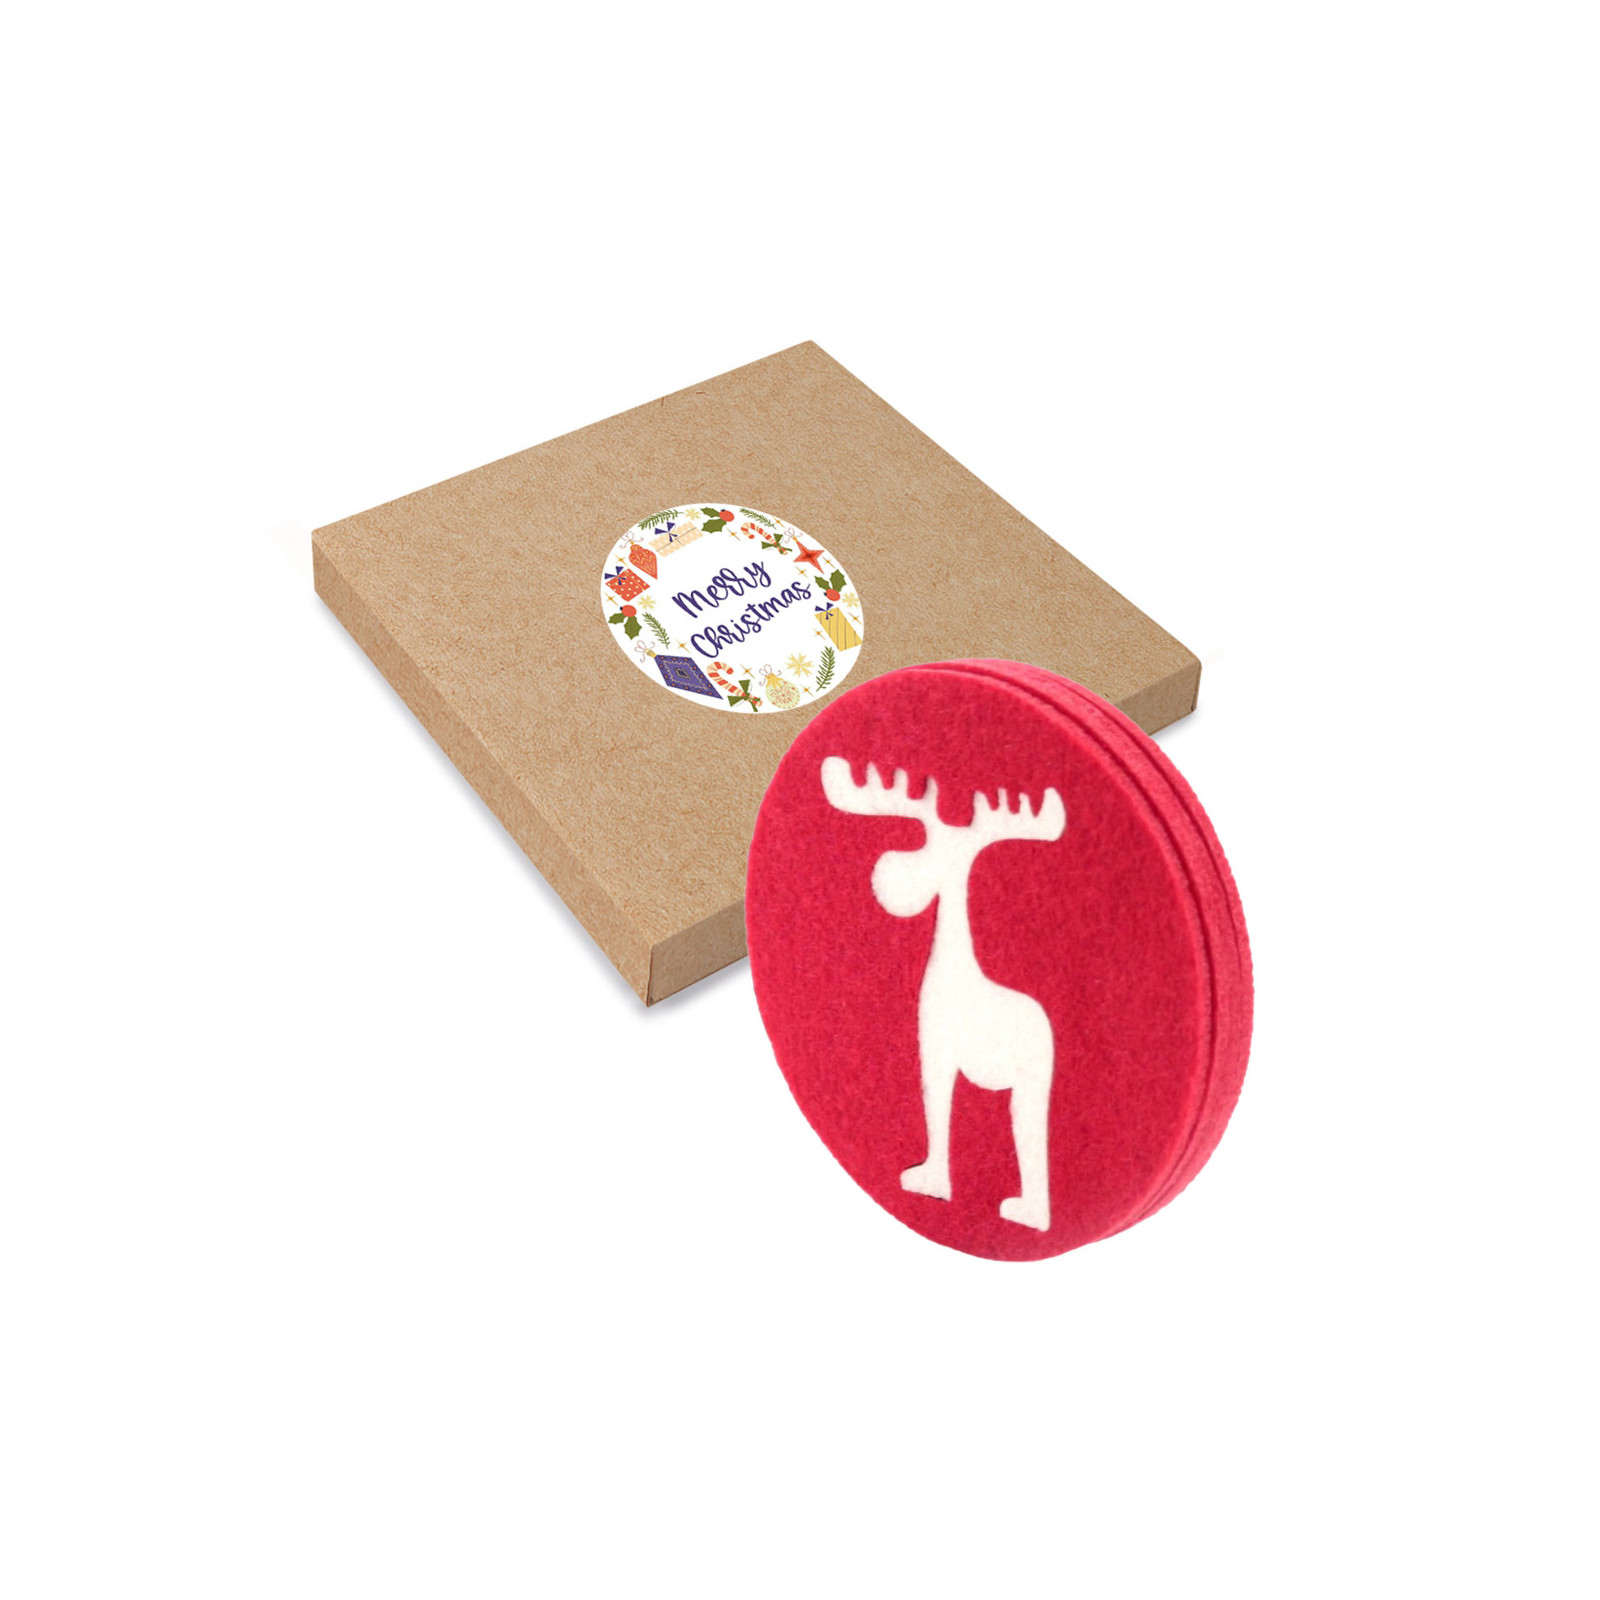 Sottobicchiere in feltro con disegno natalizio in scatola di cartone con adesivo personalizzabile